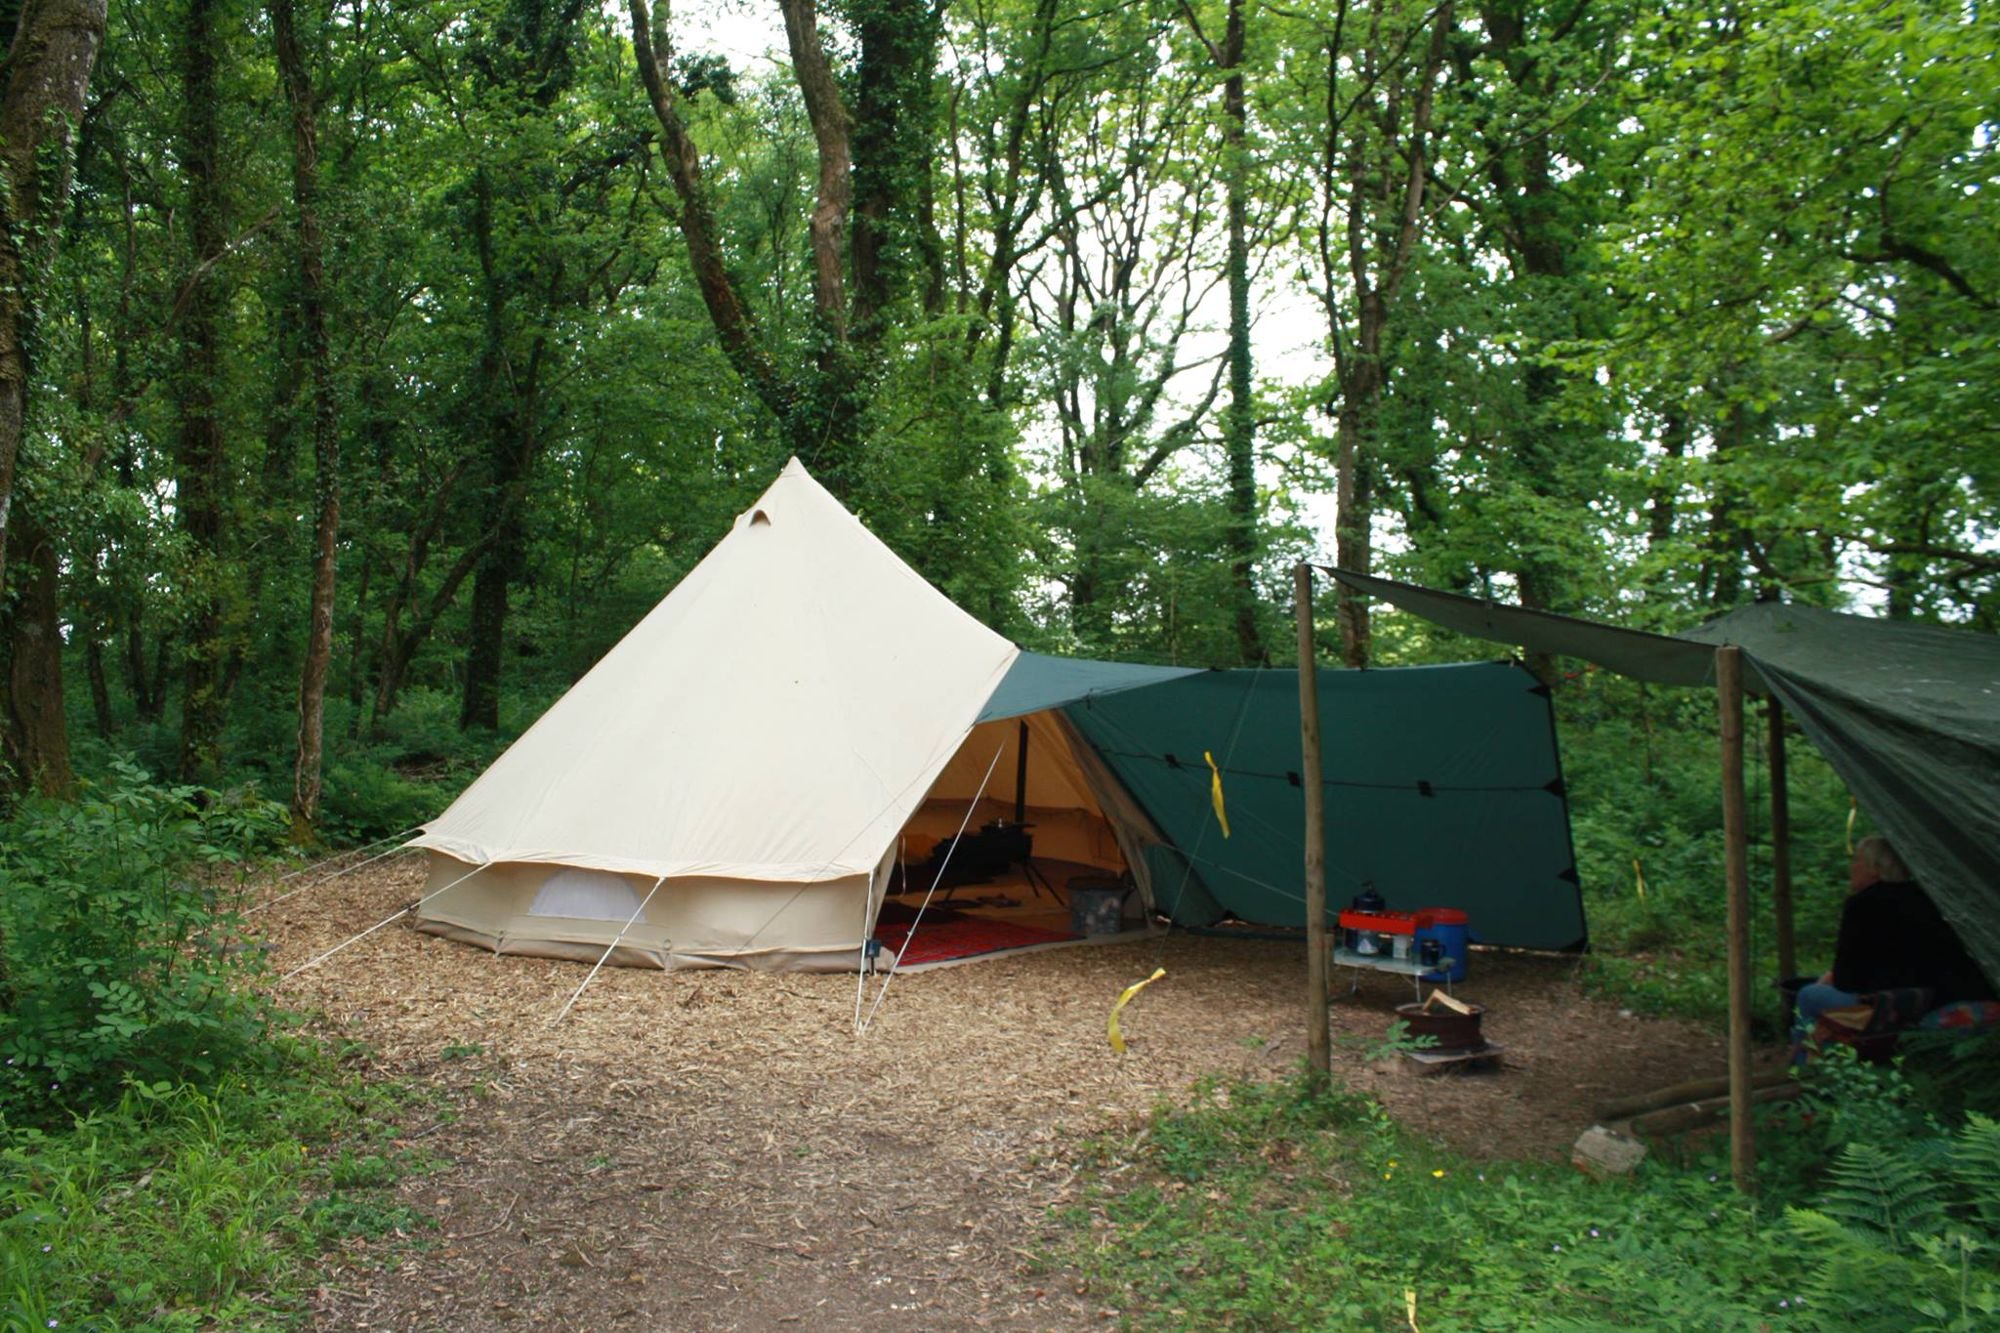 Camping rus. Палаточный лагерь Camp 2050. Палаточный лагерь на Дукке. Палатки для палаточного лагеря. Палатка в лесу.